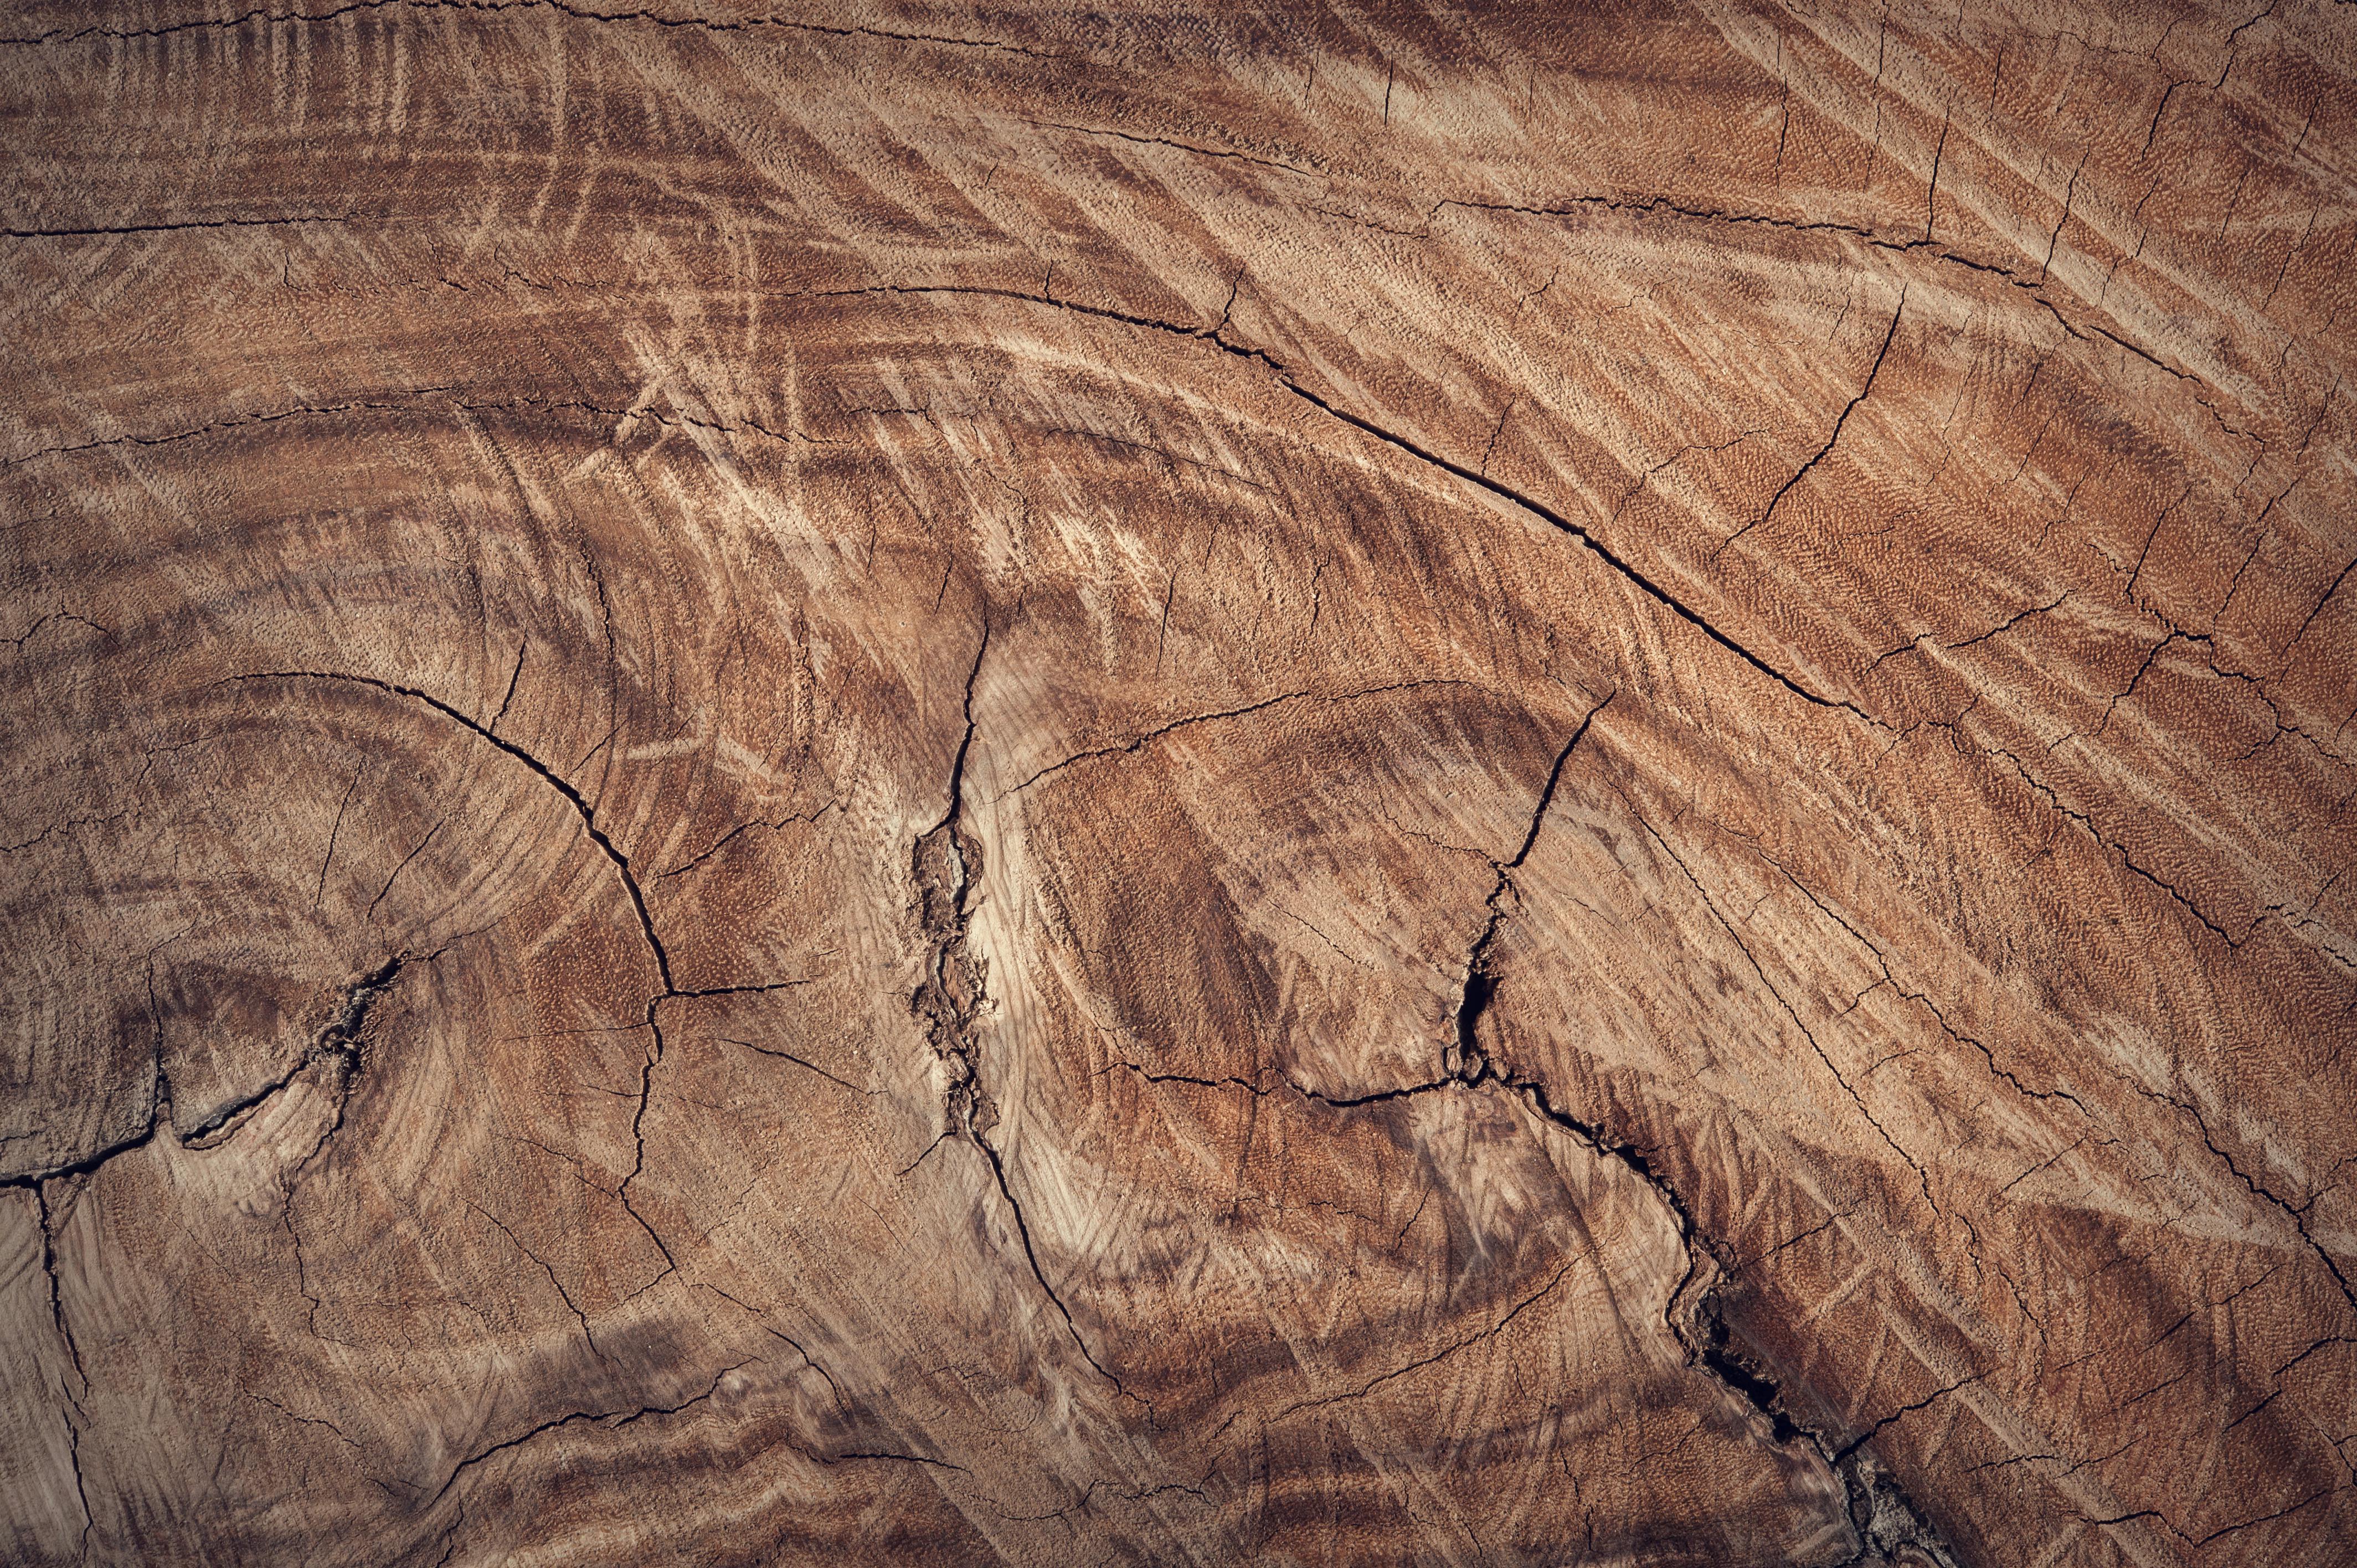 Được làm từ chất liệu tự nhiên, texture gỗ mang đến vẻ đẹp tự nhiên, gần gũi với thiên nhiên. Nhìn vào texture gỗ, bạn sẽ cảm nhận được sự ấm áp, nhẹ nhàng của gỗ tự nhiên, và tạo nên bức tranh hoàn hảo cho không gian của bạn. Hãy khám phá hình ảnh liên quan để cảm nhận rõ hơn vẻ đẹp của texture gỗ.